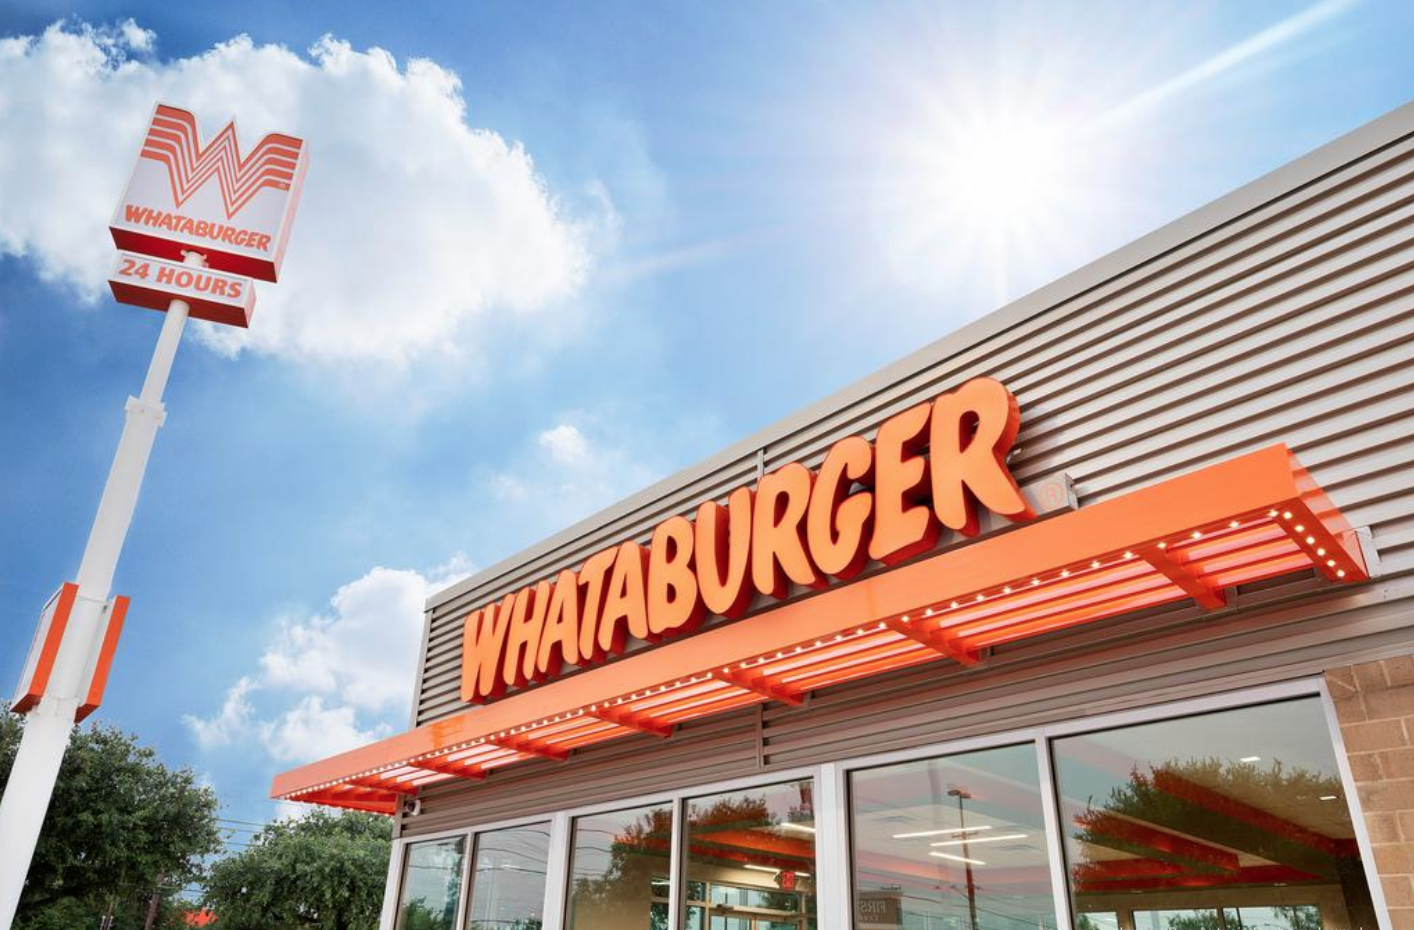 Dallas Cowboys Make Whataburger Their Official Team Burger